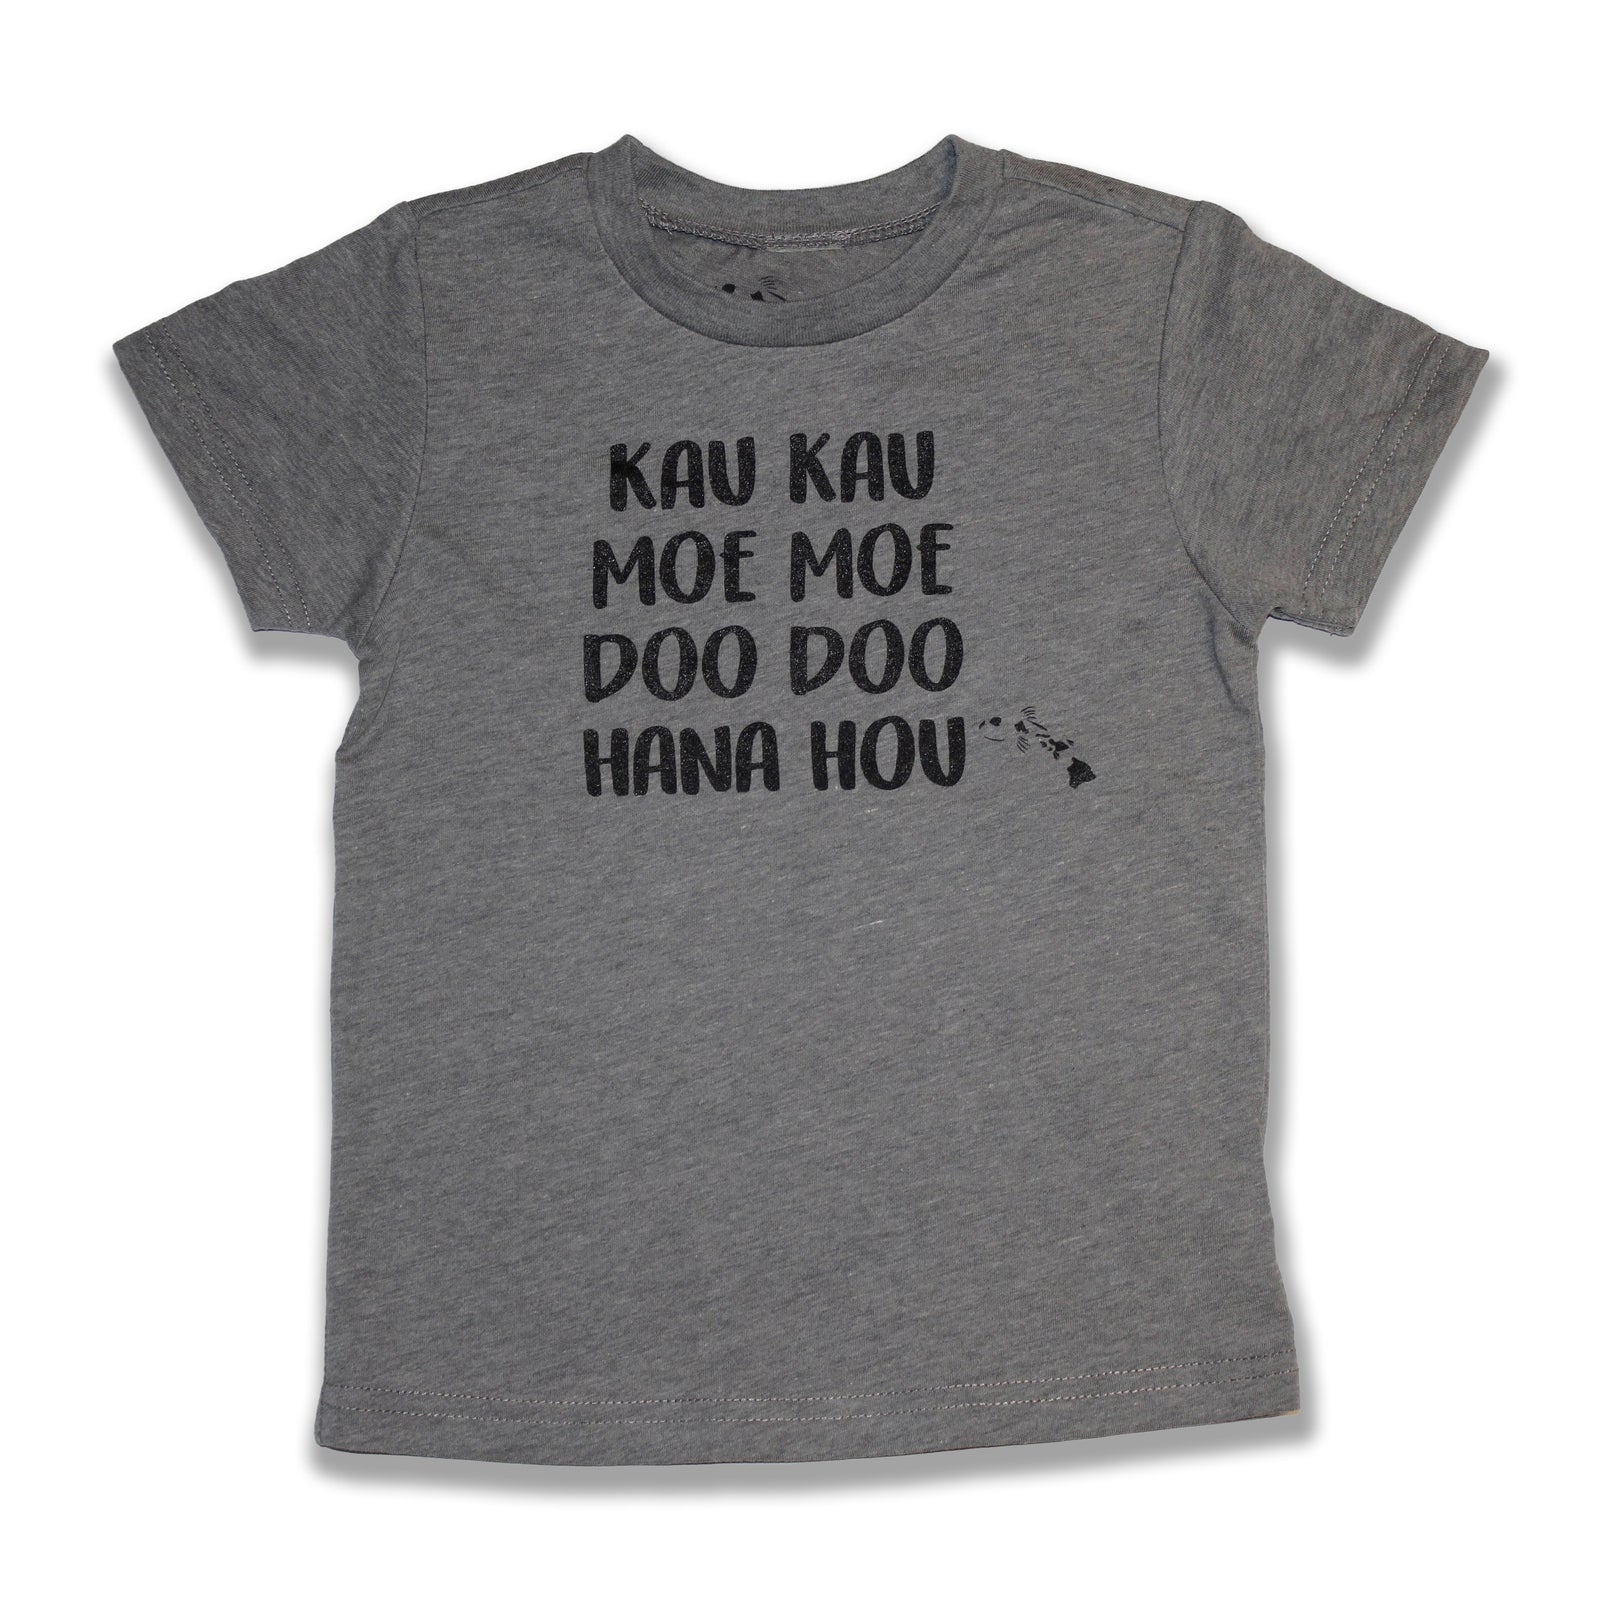 Pop-Up Mākeke - Malia and Company - Kau Kau, Moe Moe, Doo Doo, Hana Hou Keiki T-Shirt - Gray - Front View